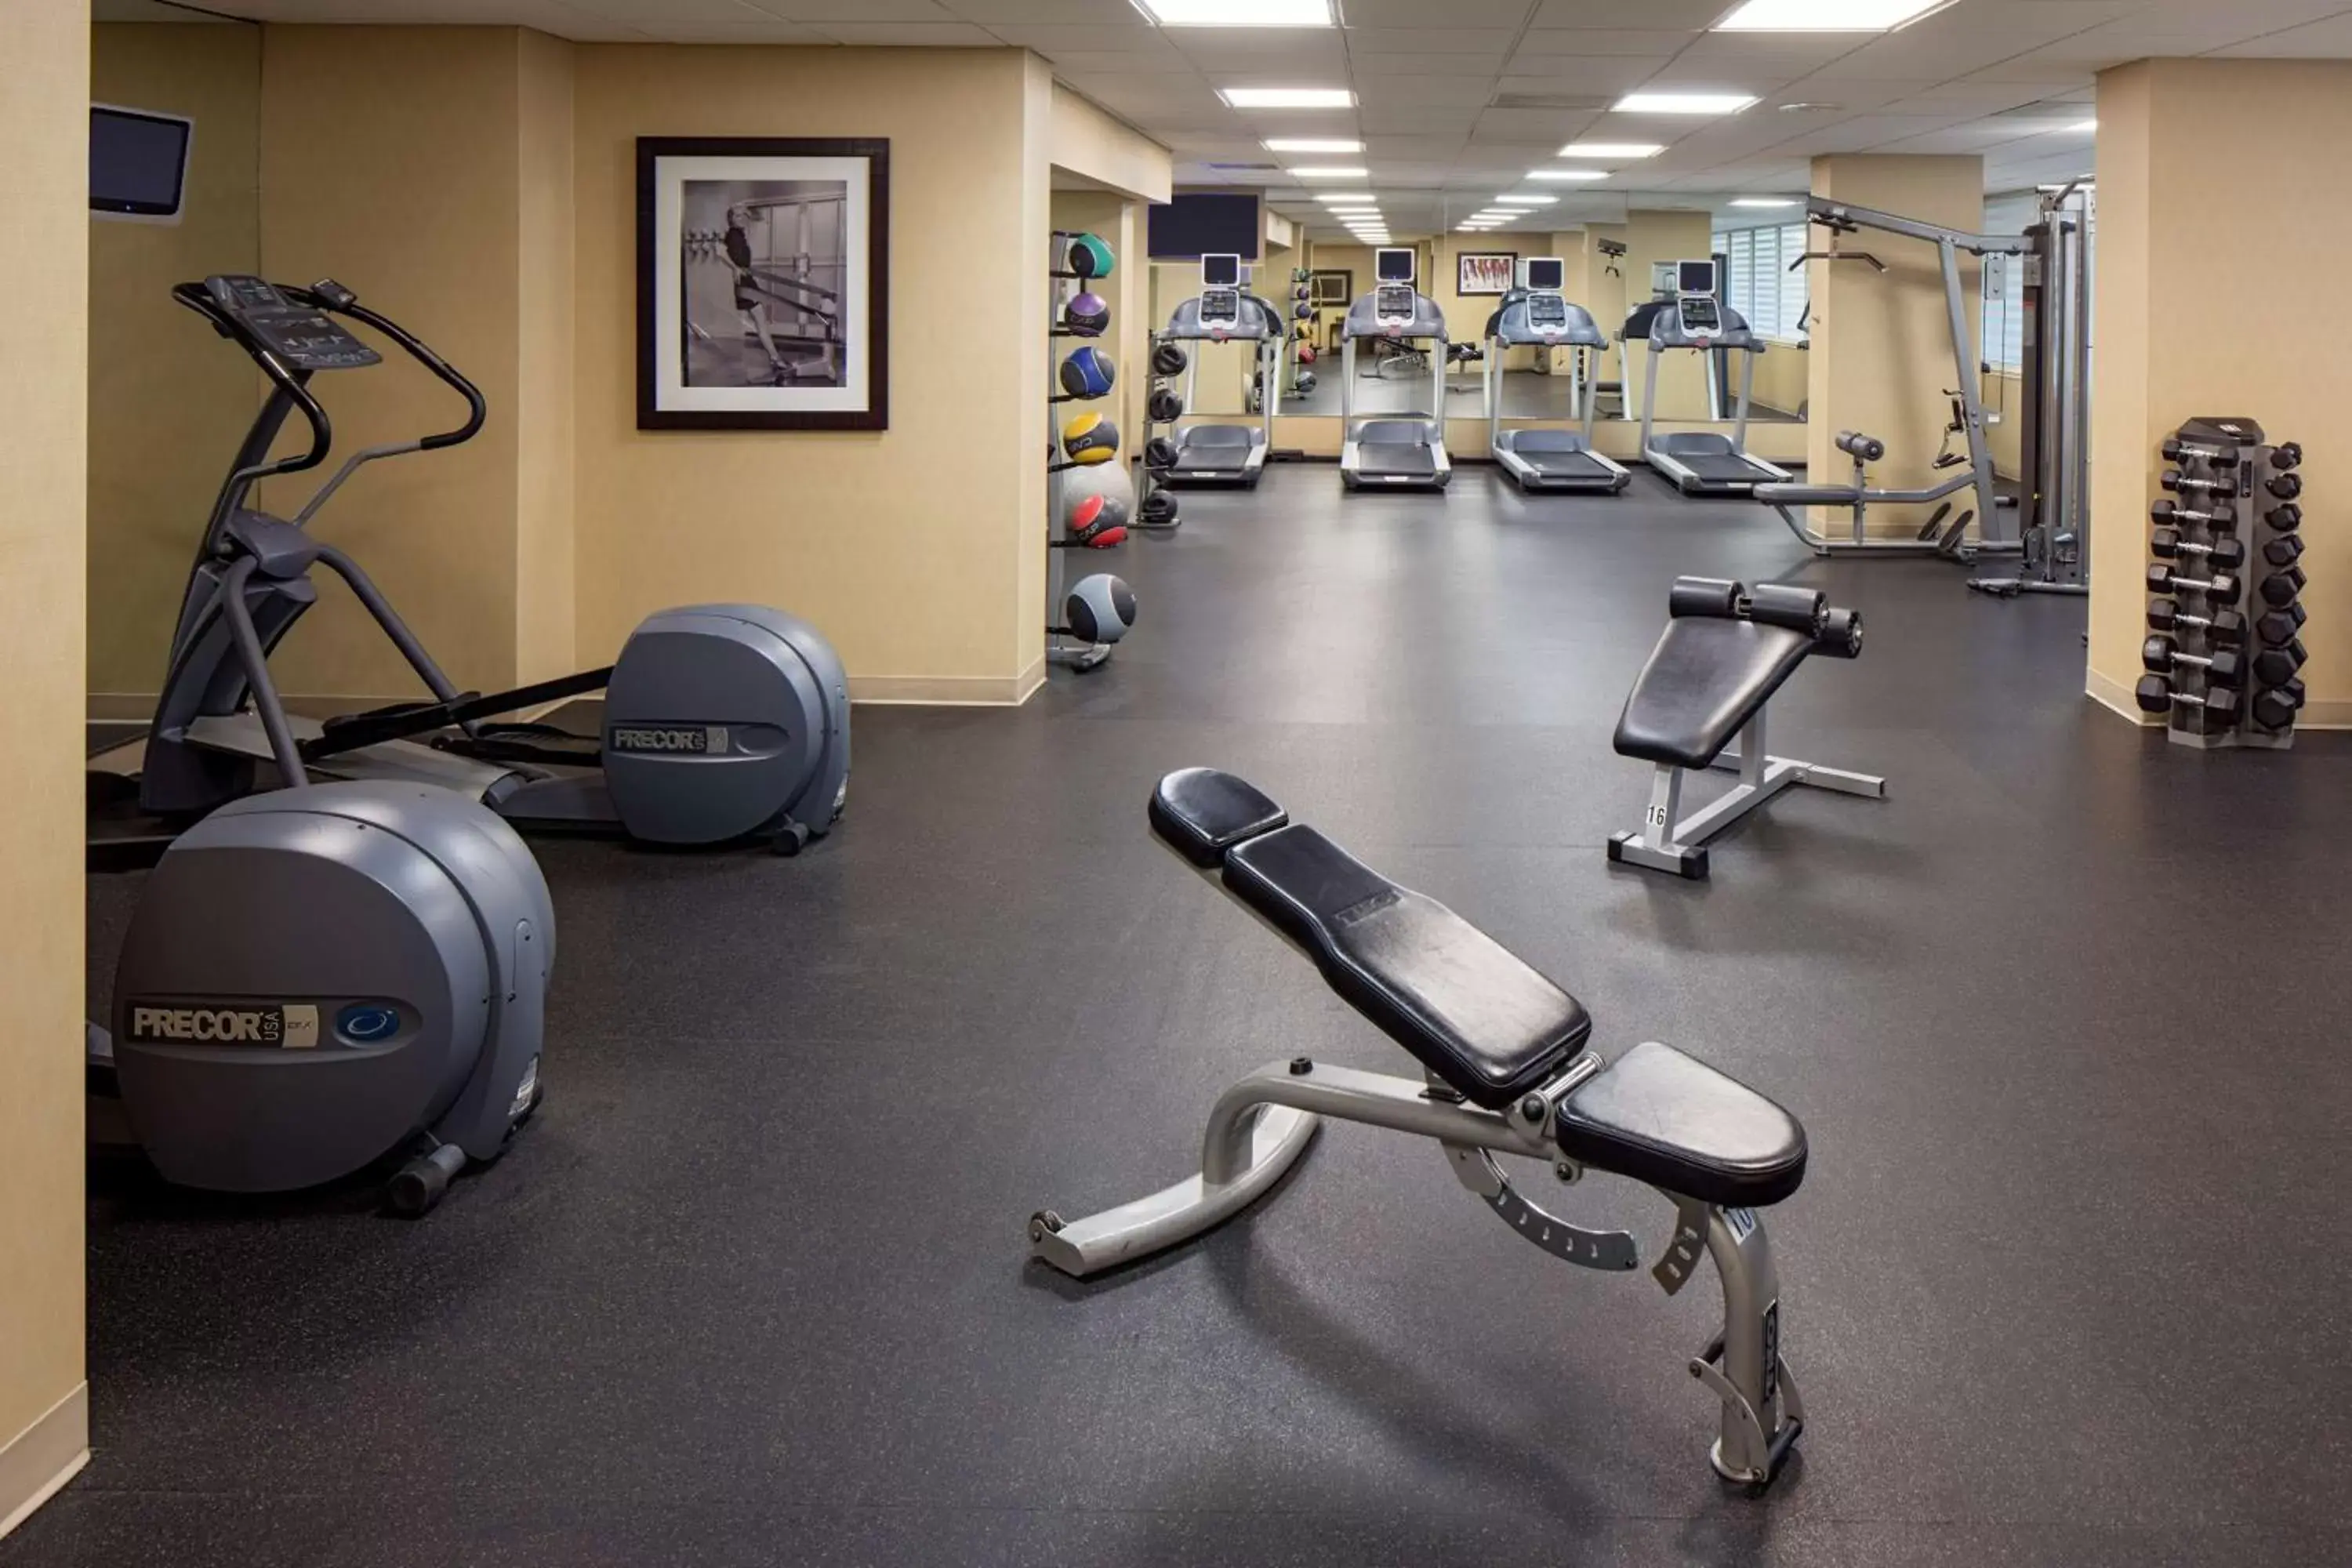 Fitness centre/facilities, Fitness Center/Facilities in Hyatt Regency Houston Intercontinental Airport